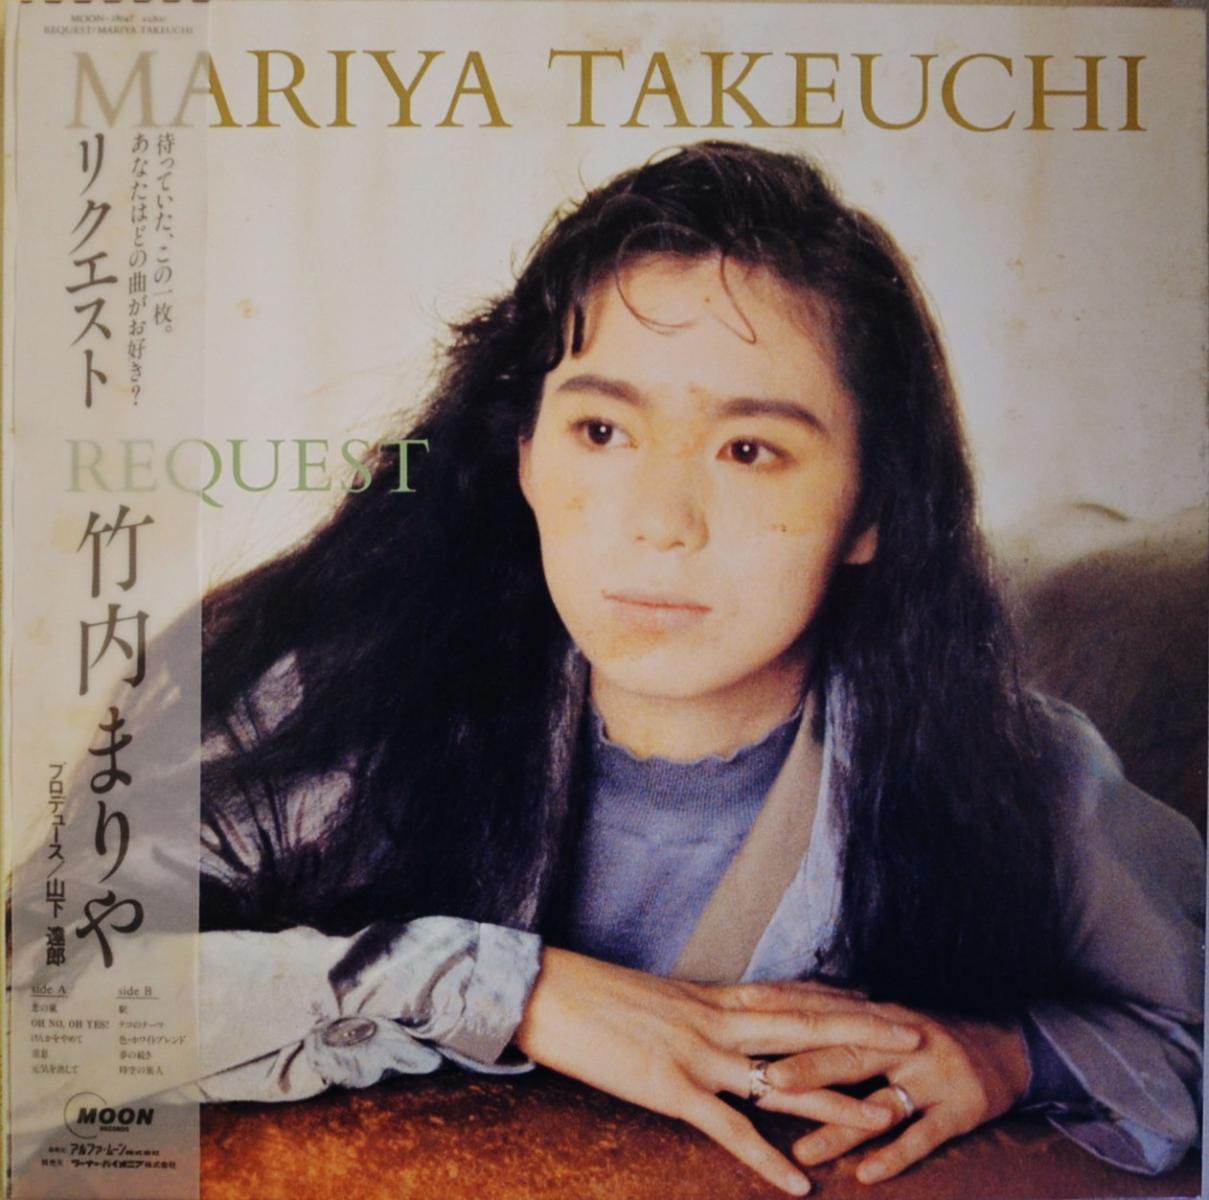 竹内まりや MARIYA TAKEUCHI / リクエスト REQUEST (LP) - HIP TANK 